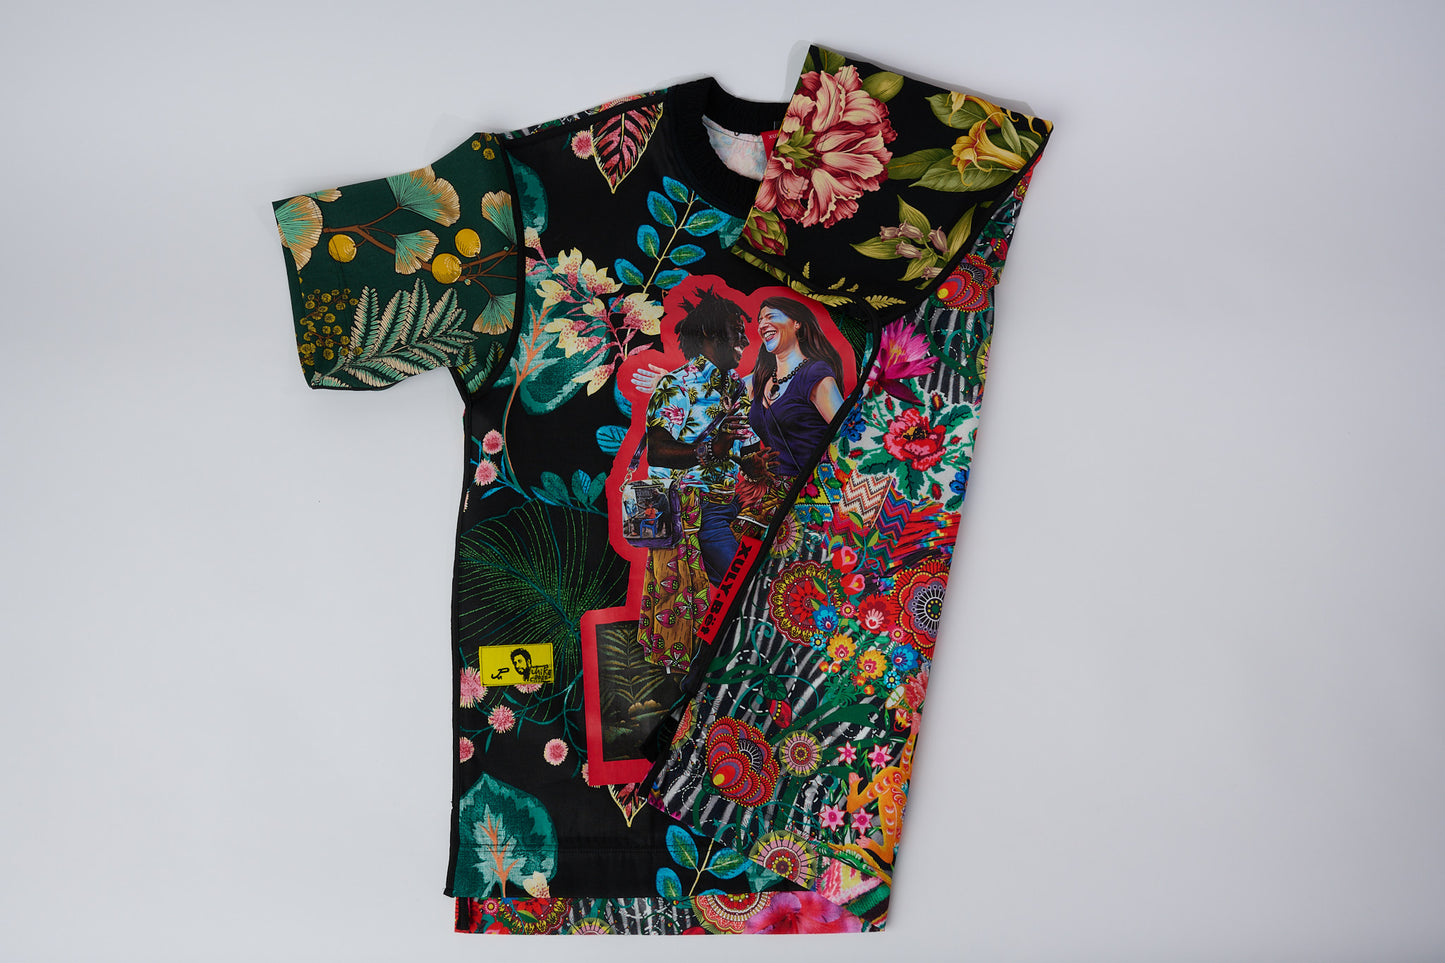 T-shirt BISENGO JP MIKA x XULY-BËT - Numéroté 15/65 - Taille L - Wearable-art inspiré du tableau "Tala Mabina ya Mboka na Biso" (Regarde la danse de notre pays) de la série de toiles BISENGO de JP MIKA.